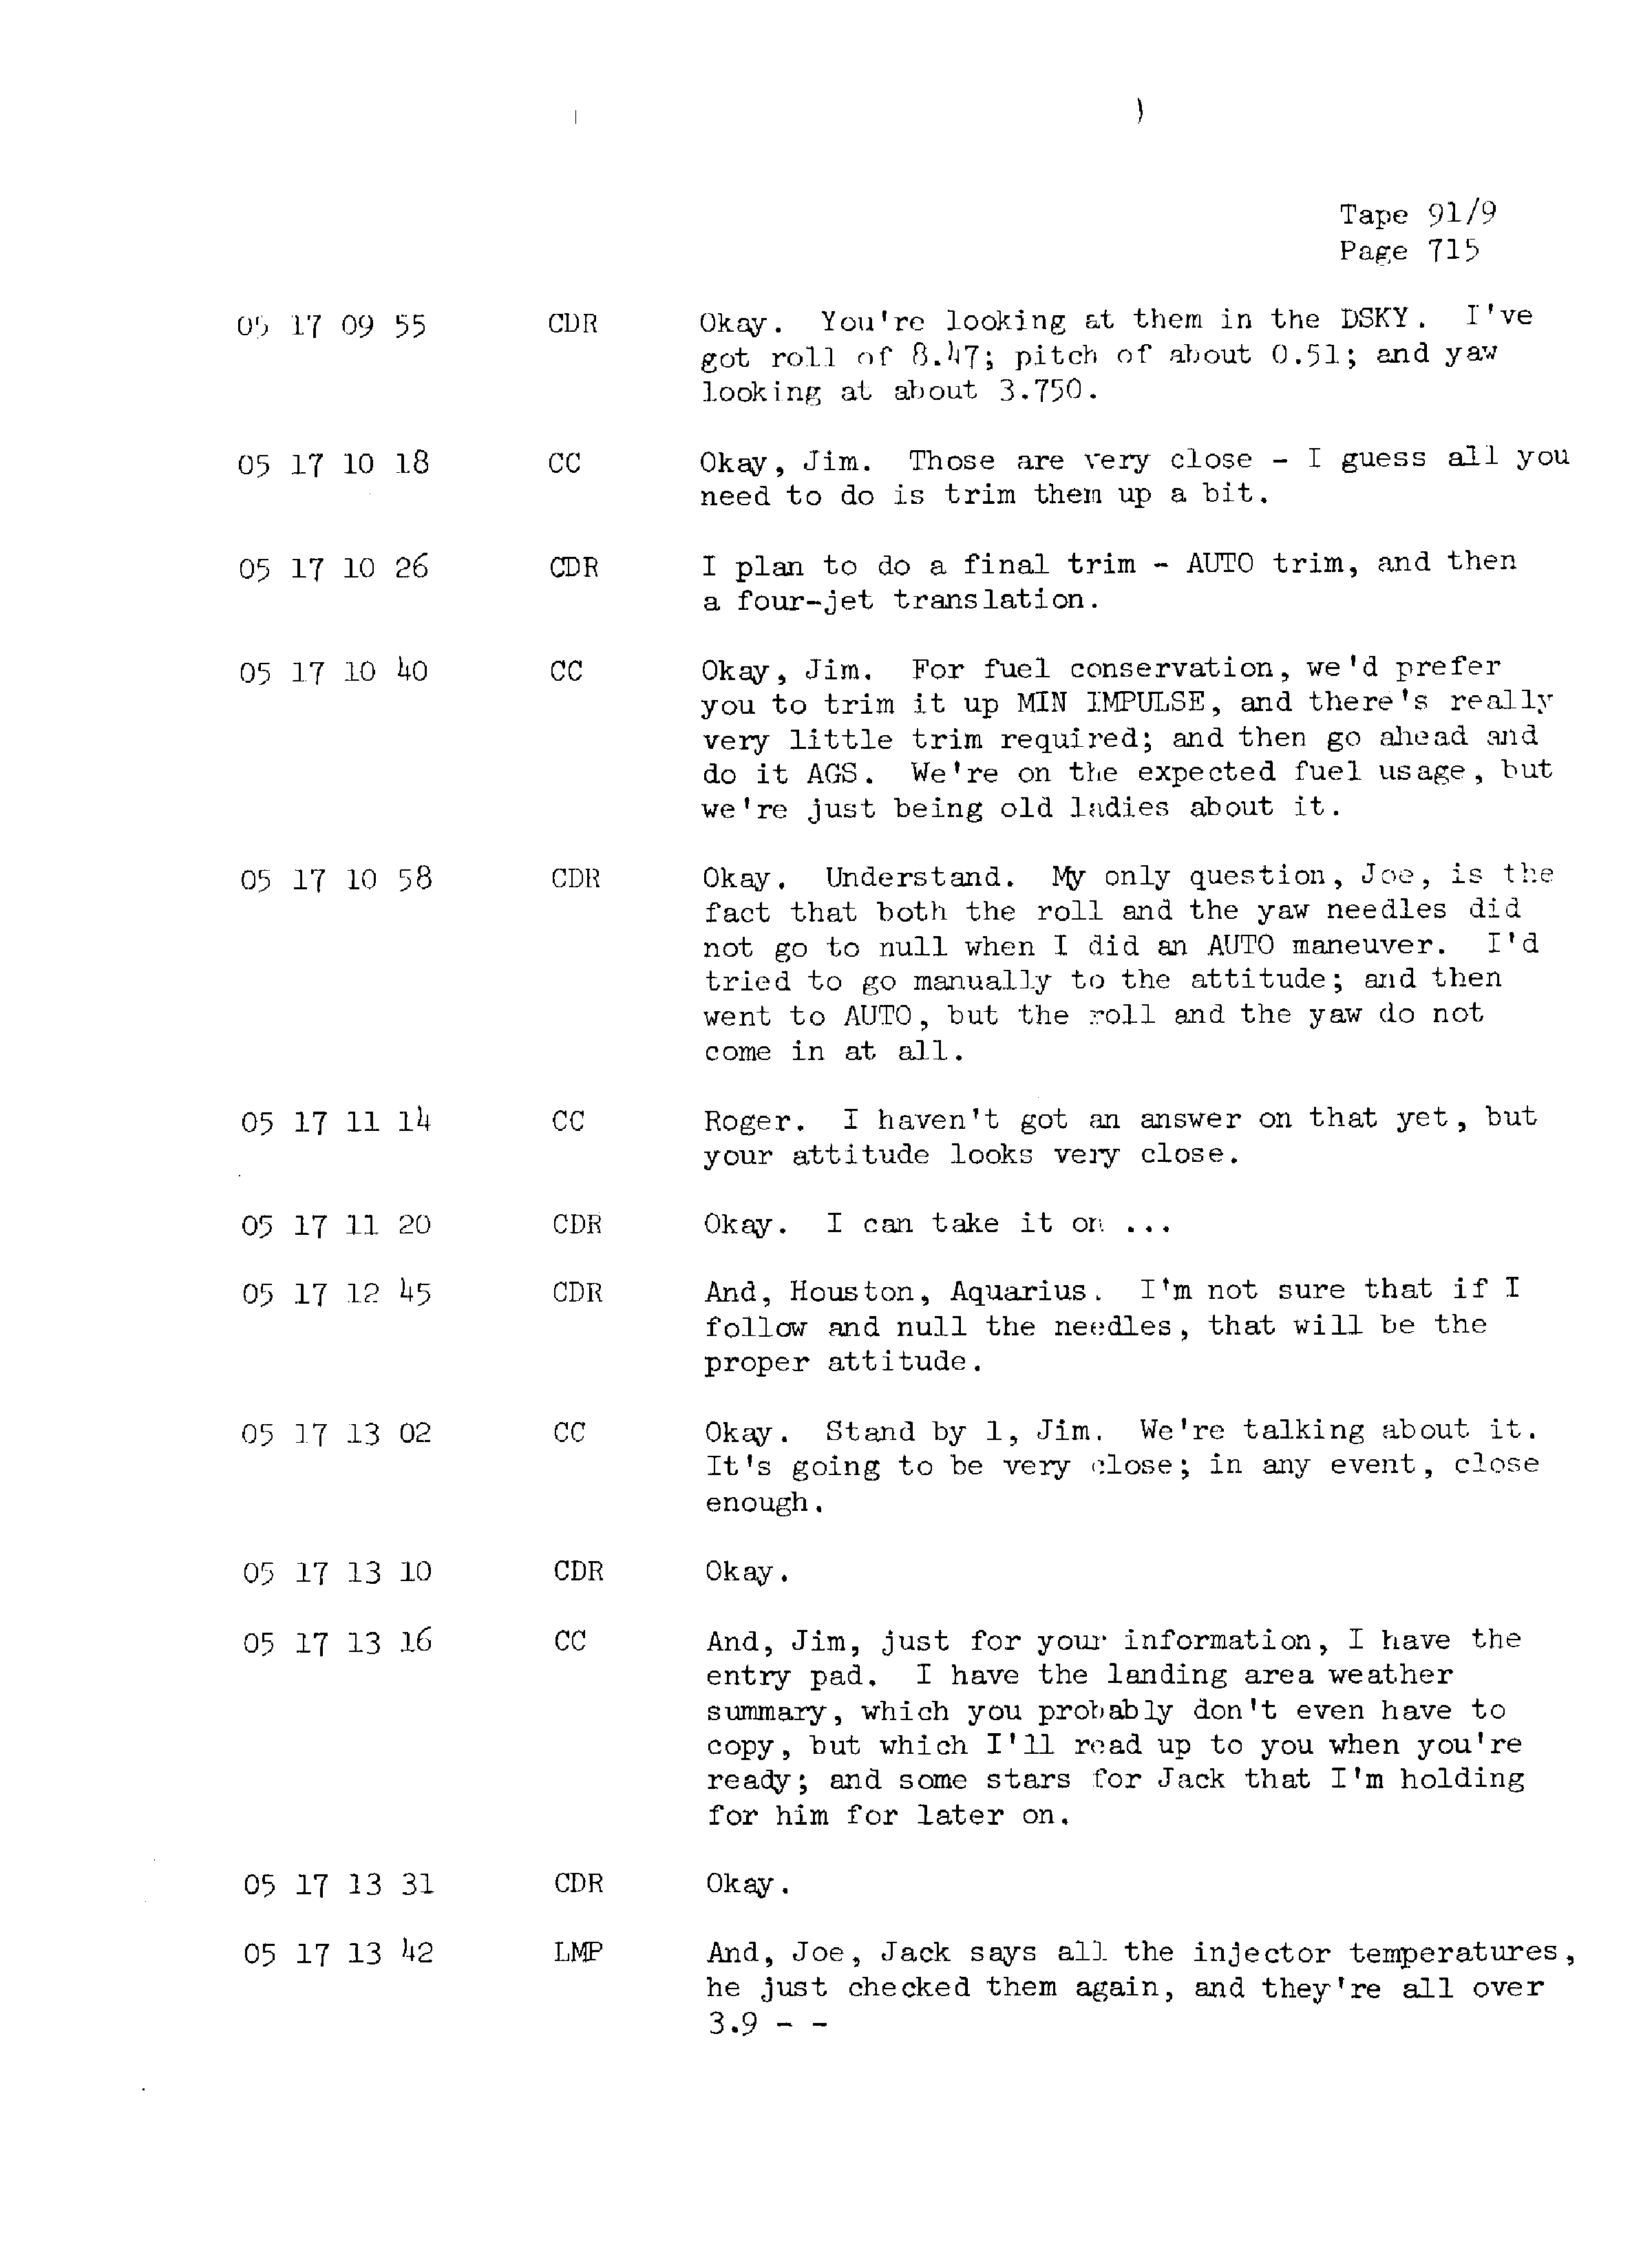 Page 722 of Apollo 13’s original transcript